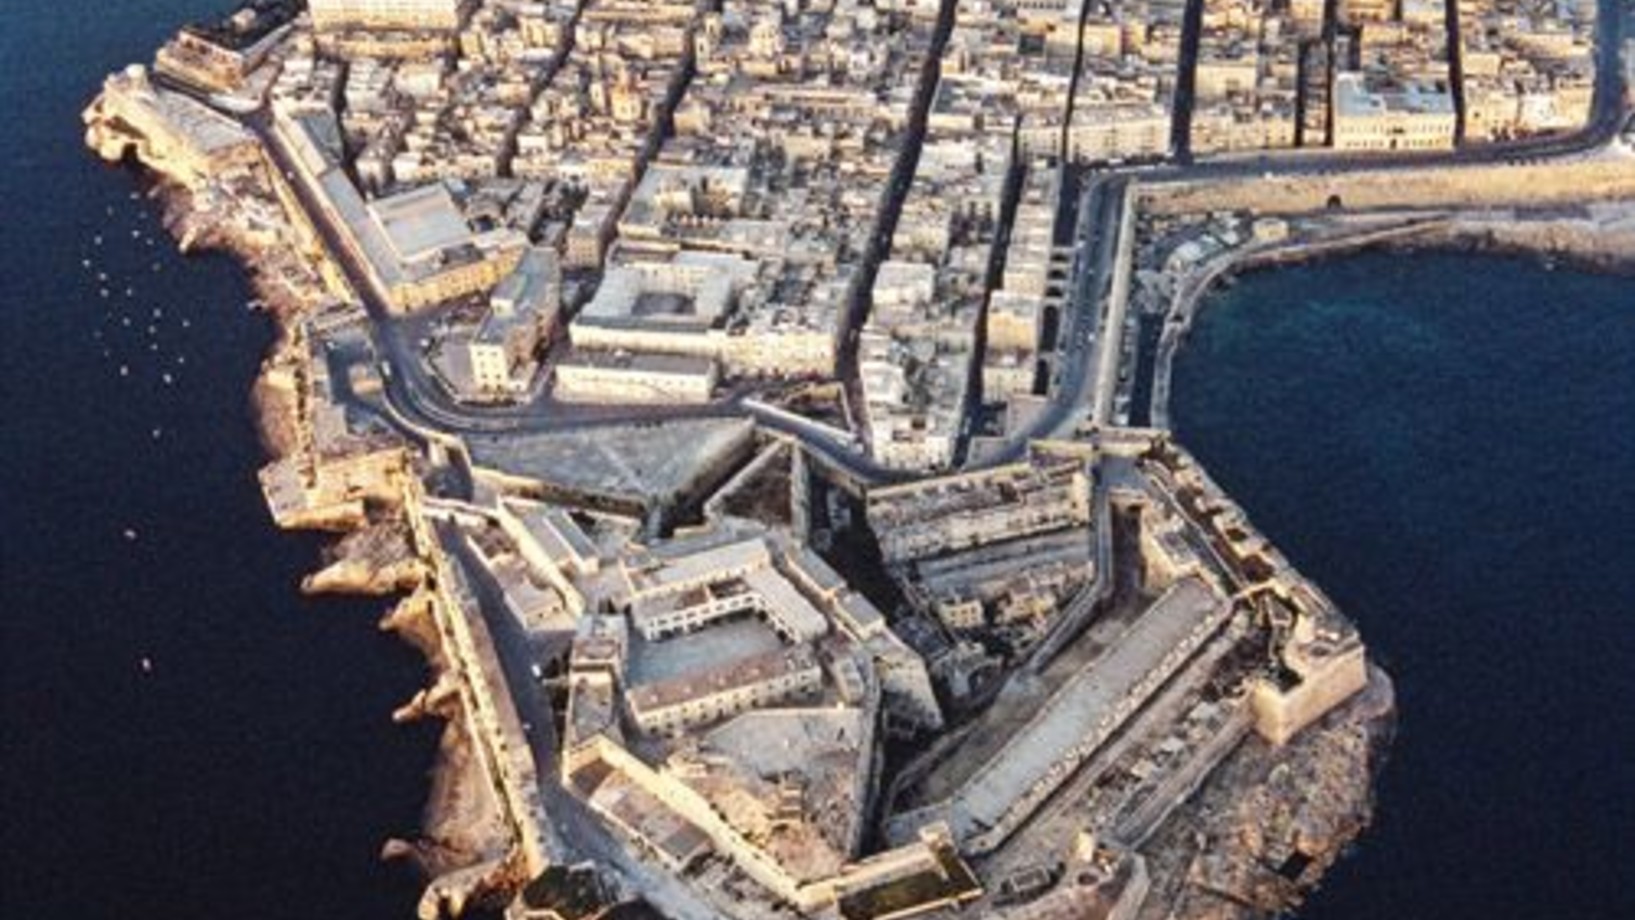 La Valletta - der verfluchte Felsen
Sultan Suleiman der Prächtige verteufelte die Mittelmeerinsel Malta – „der verfluchte Felsen“ – mit gutem Grund. Die Johanniter, von dem vorstürmenden Islam aus Palästina vertrieben und dann auch von Rhodos verjagt, hatten 1530 in Malta eine Zufluchtsstätte gefunden, aber schon 1565 folgte ihnen dorthin ein türkisches Expeditionsheer. Dessen Kommandant wollte mit den Ordensrittern kurzen Prozess machen, aber der geplante Blitzkrieg verkam zur zermürbenden Belagerung. Zw…